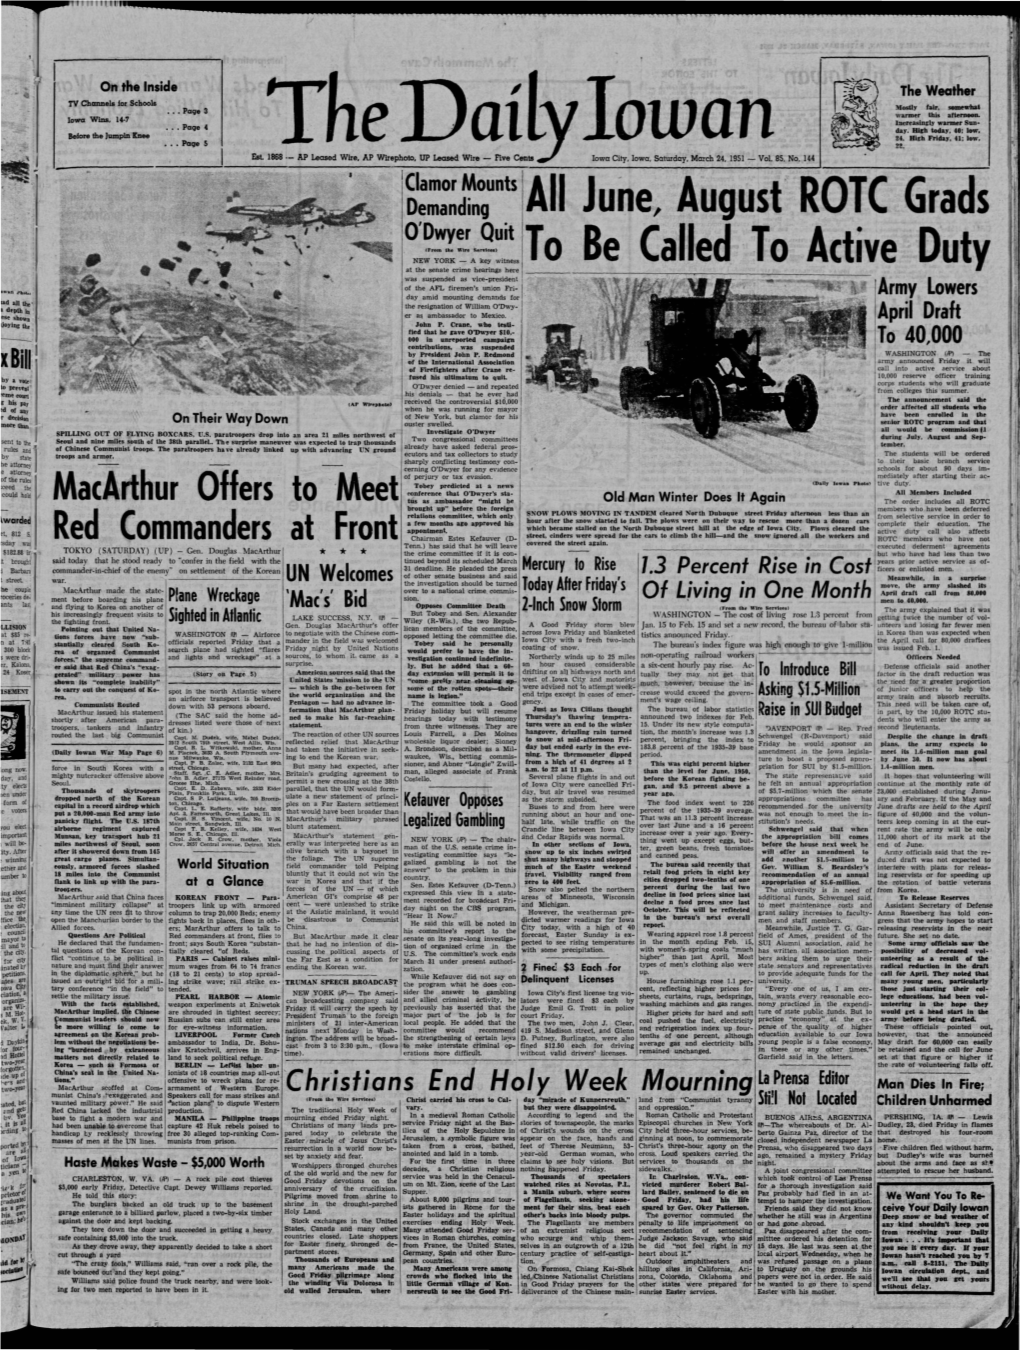 Daily Iowan (Iowa City, Iowa), 1951-03-24